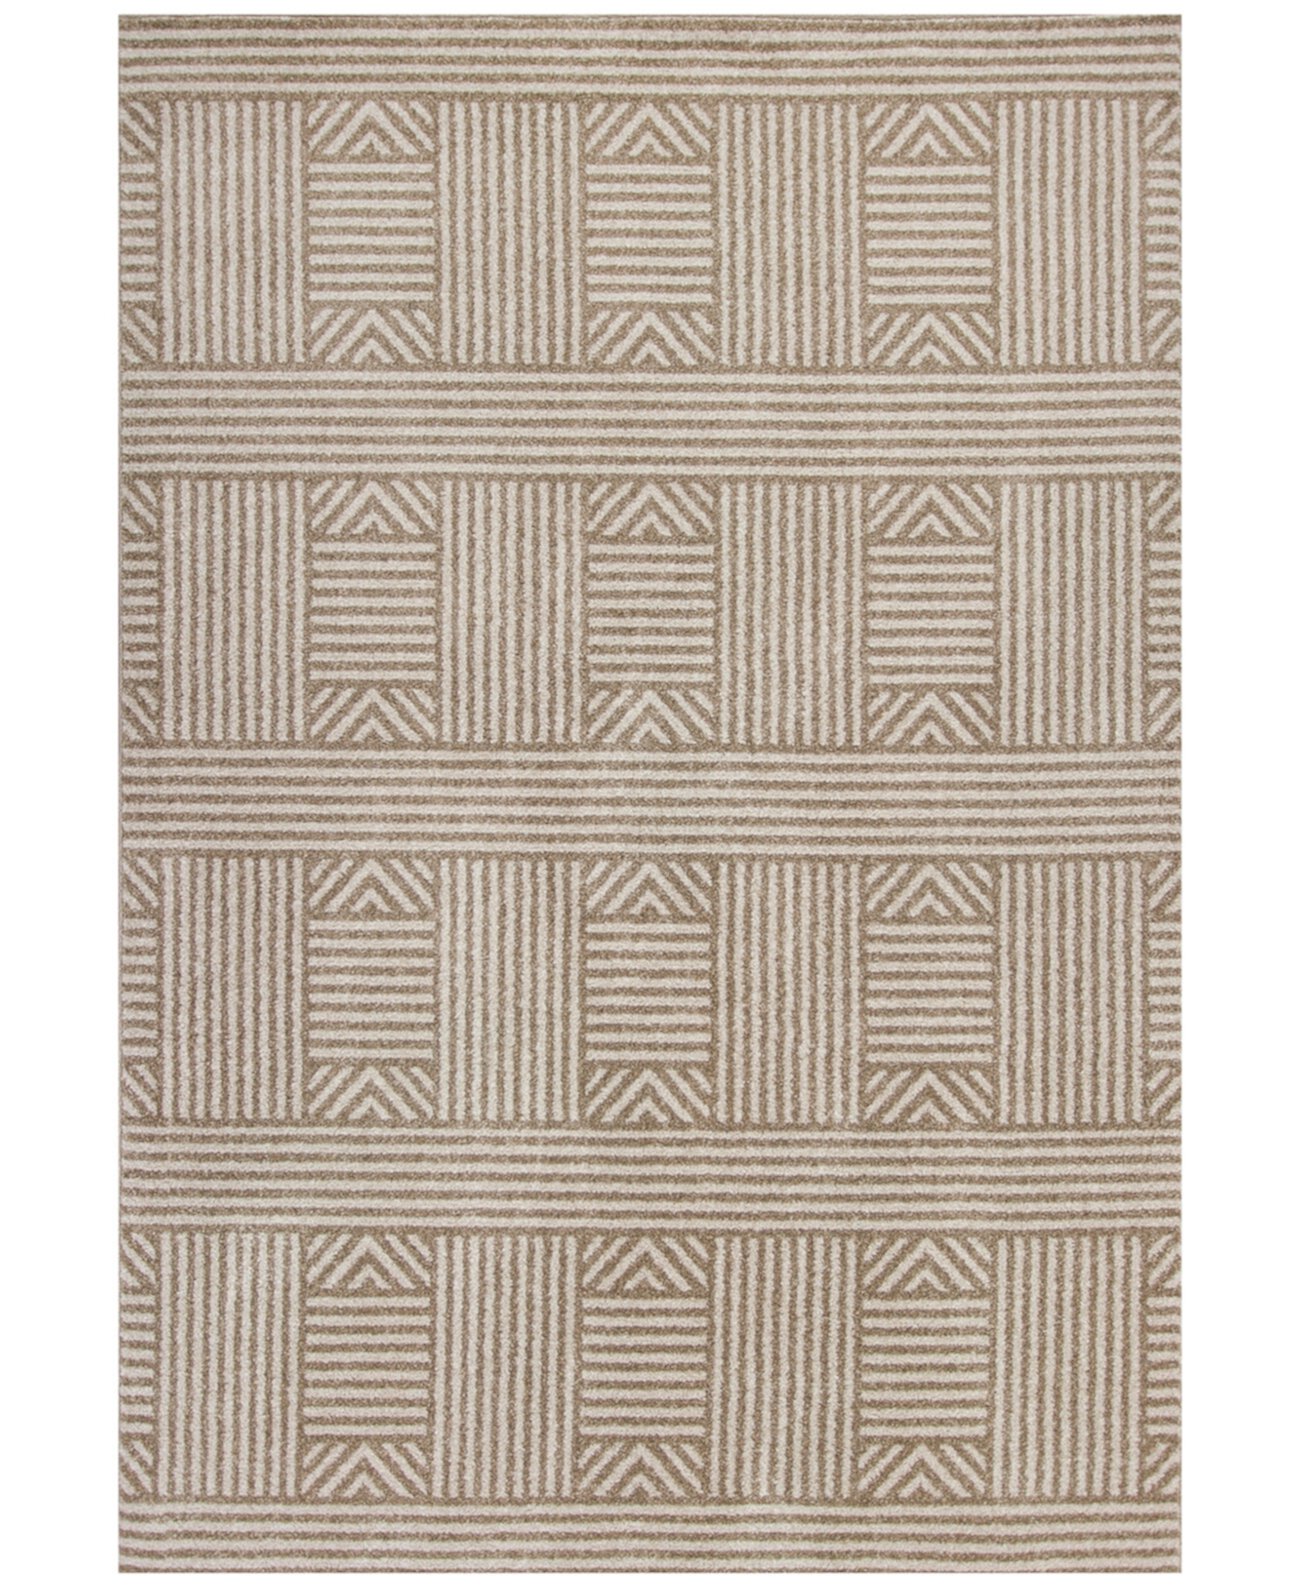 Lucia Westport 2762 Бежевый ковер размером 5 футов 3 x 7 футов 7 дюймов для внутреннего/наружного использования KAS New York